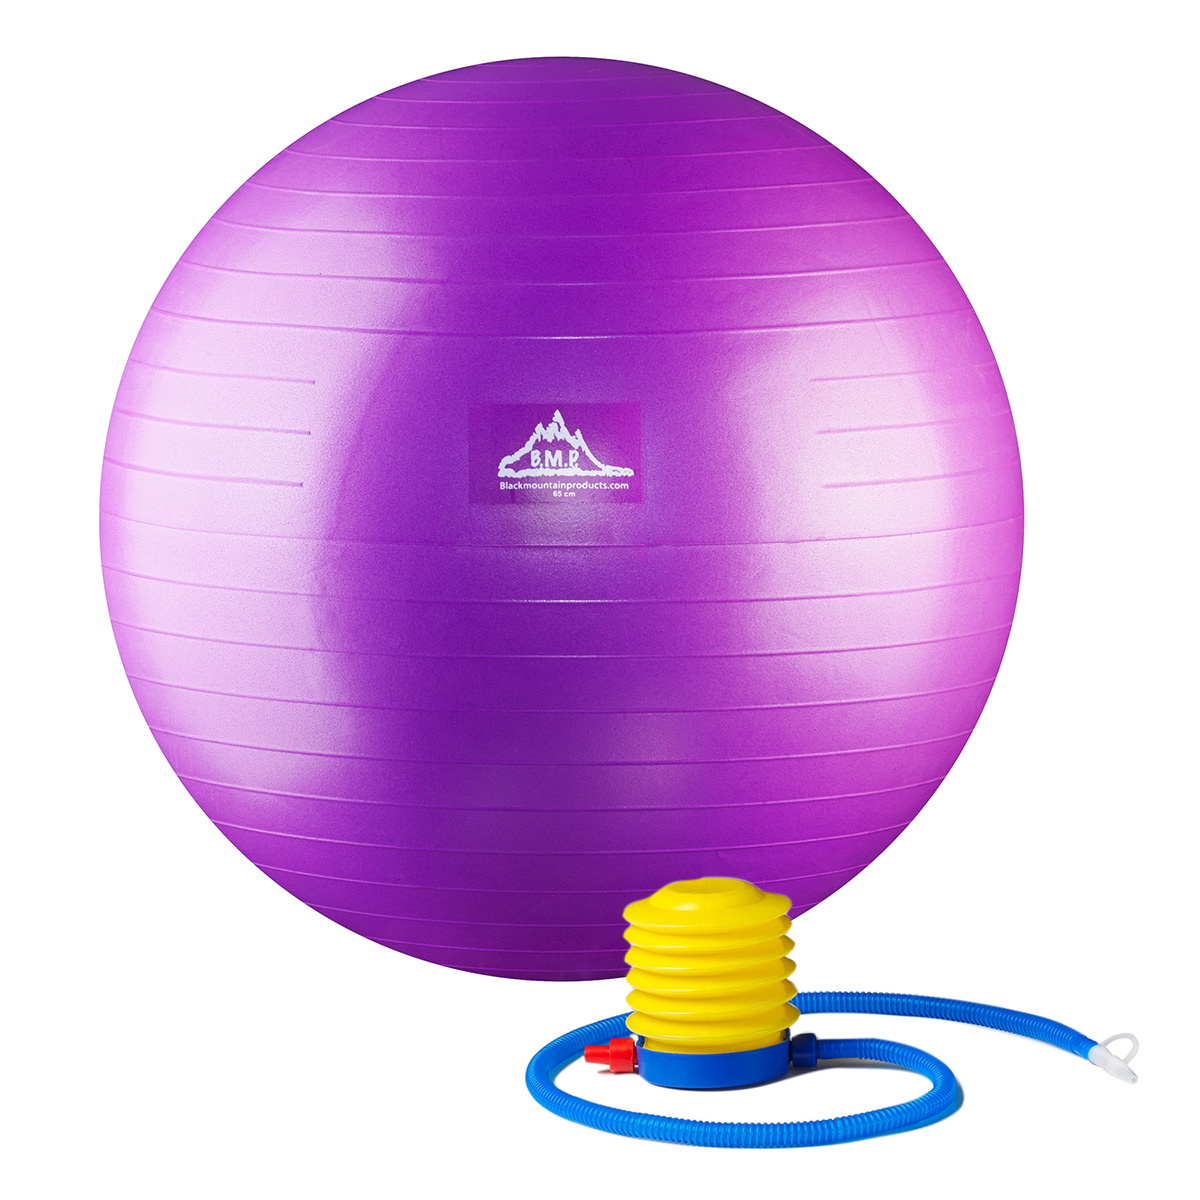 Stability Ball Pump